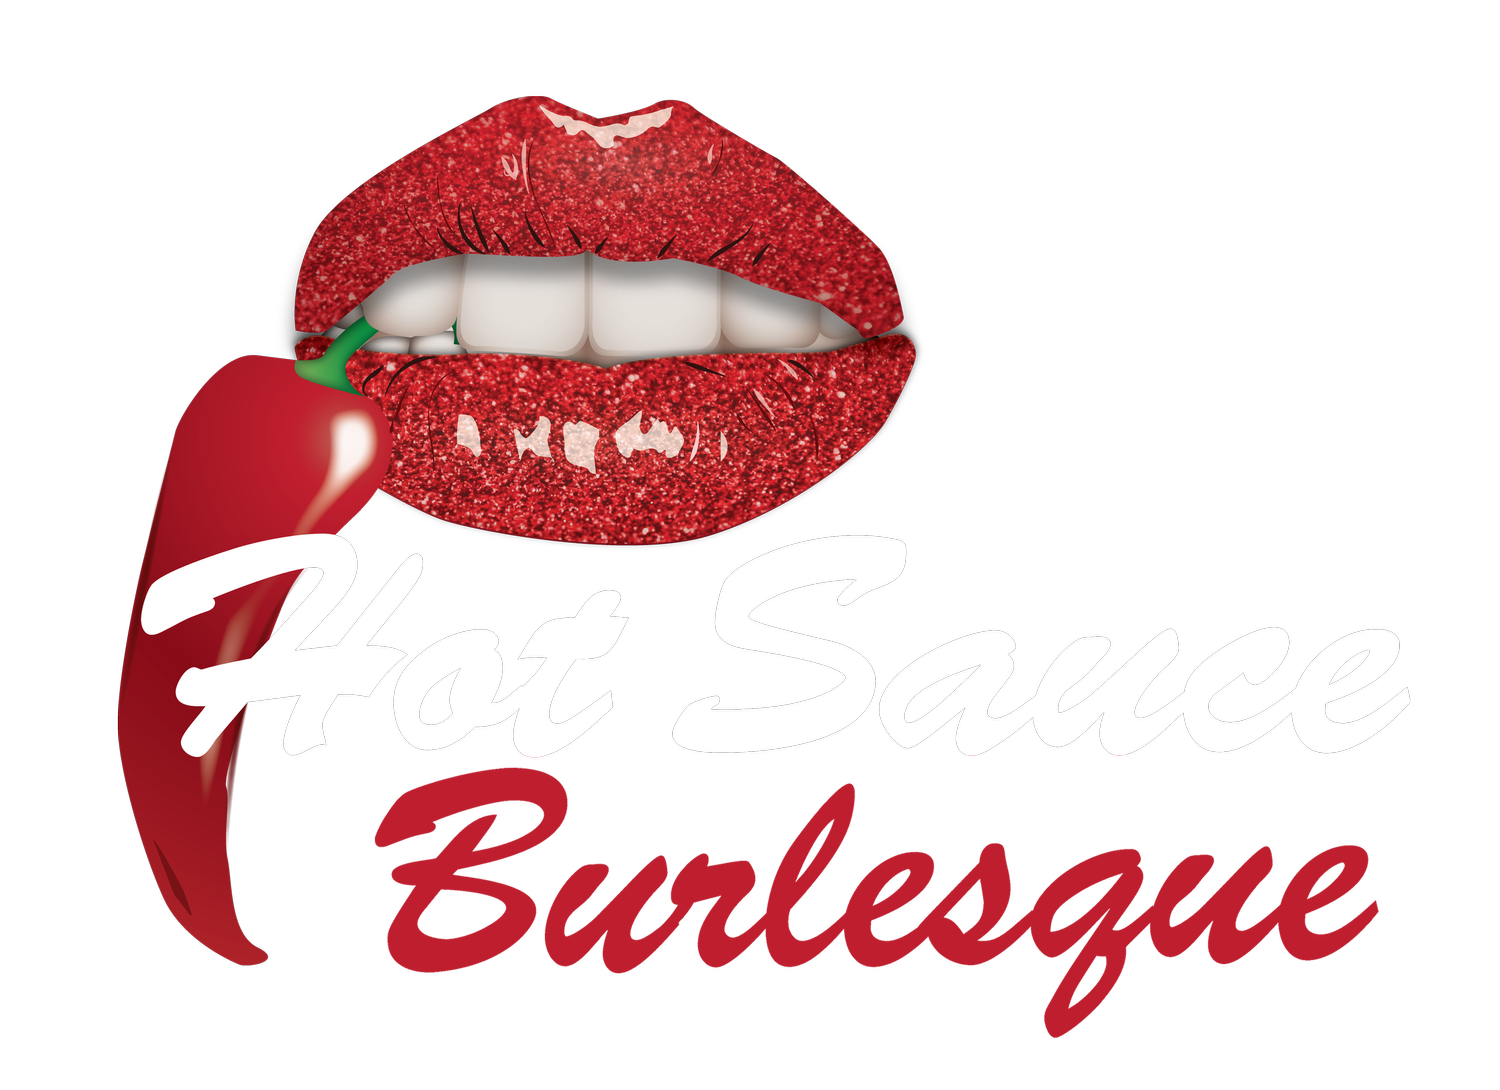 Hot Sauce Burlesque